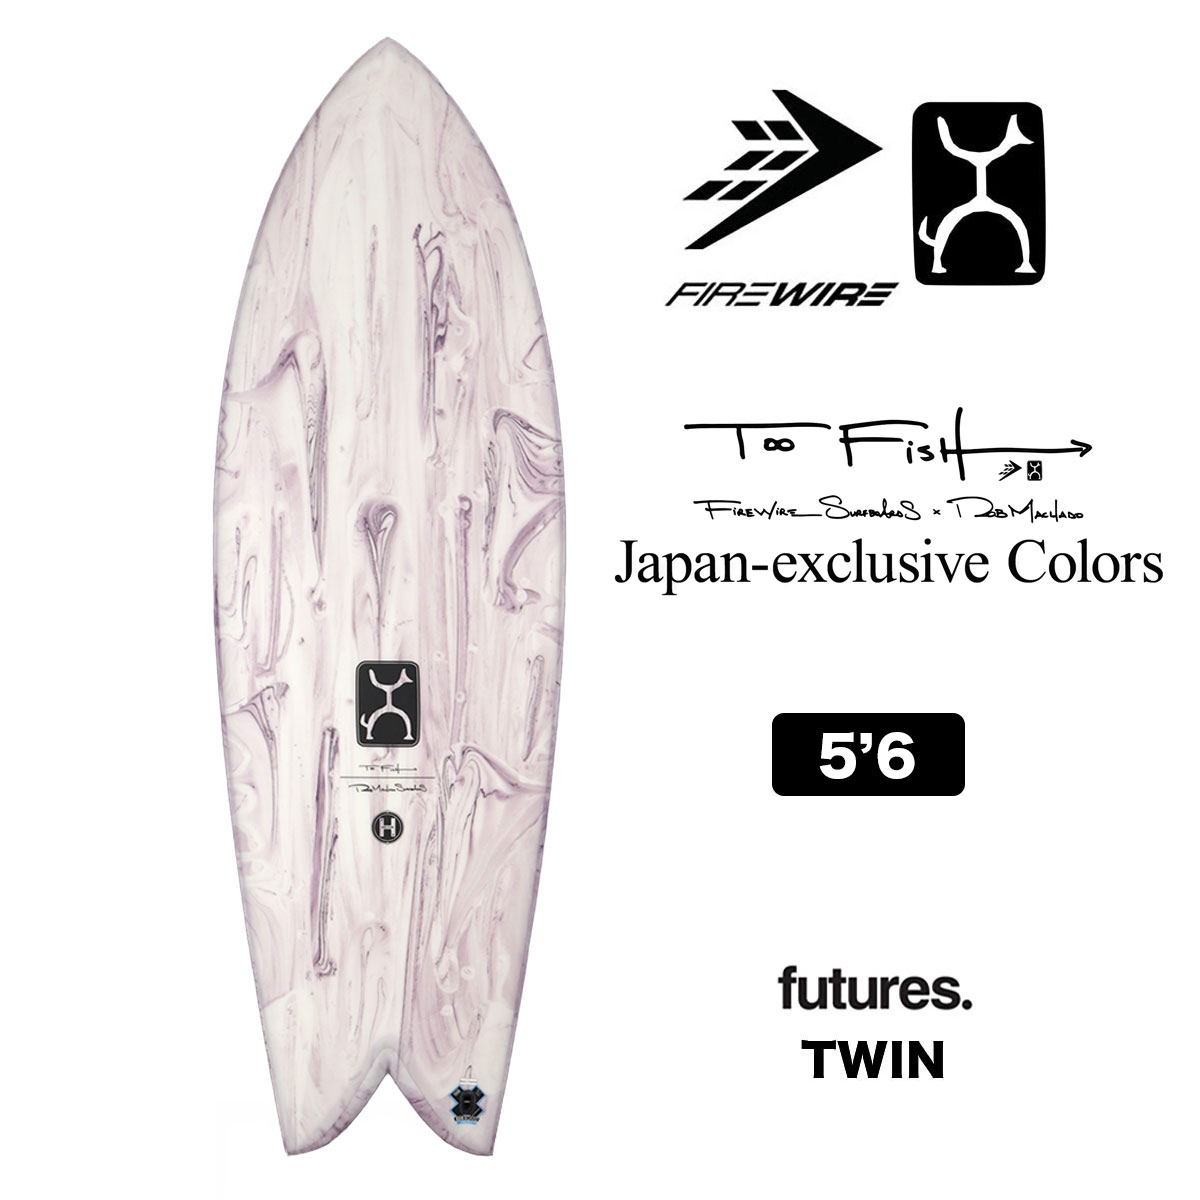 ファイヤーワイヤー サーフボード トゥーフィッシュ FIREWIRE Too Fish japan exclusive Color 5.6  ロブマチャド ツインフィン futures サーフィン 正規取扱店 パープル 5'6 -ジャックオーシャンスポーツ